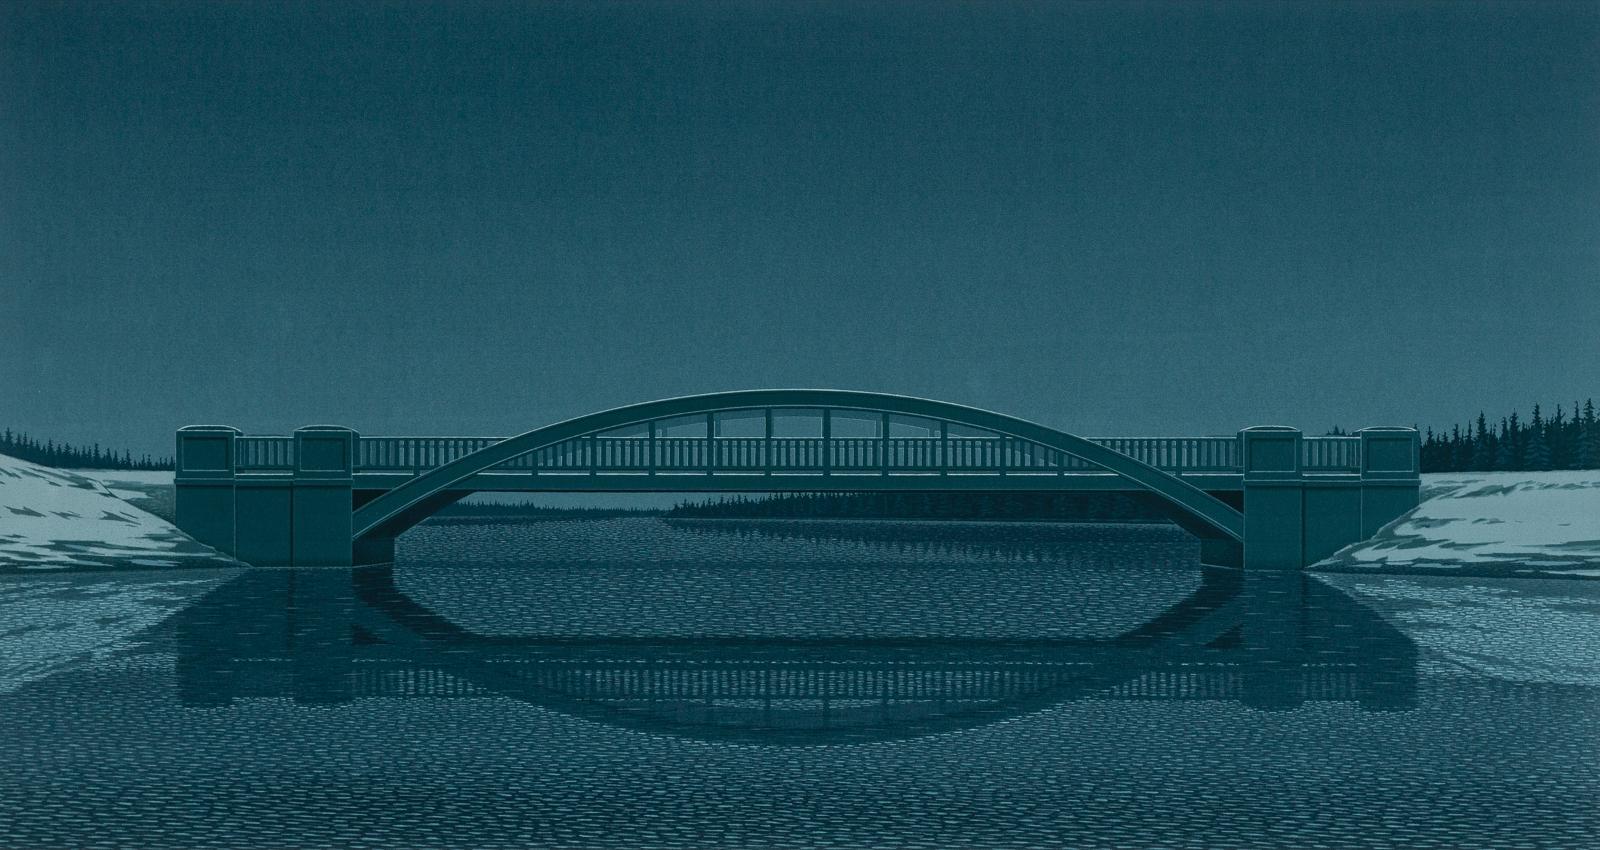 Christopher John Pratt (1935-2022) - The Bridge, 1989